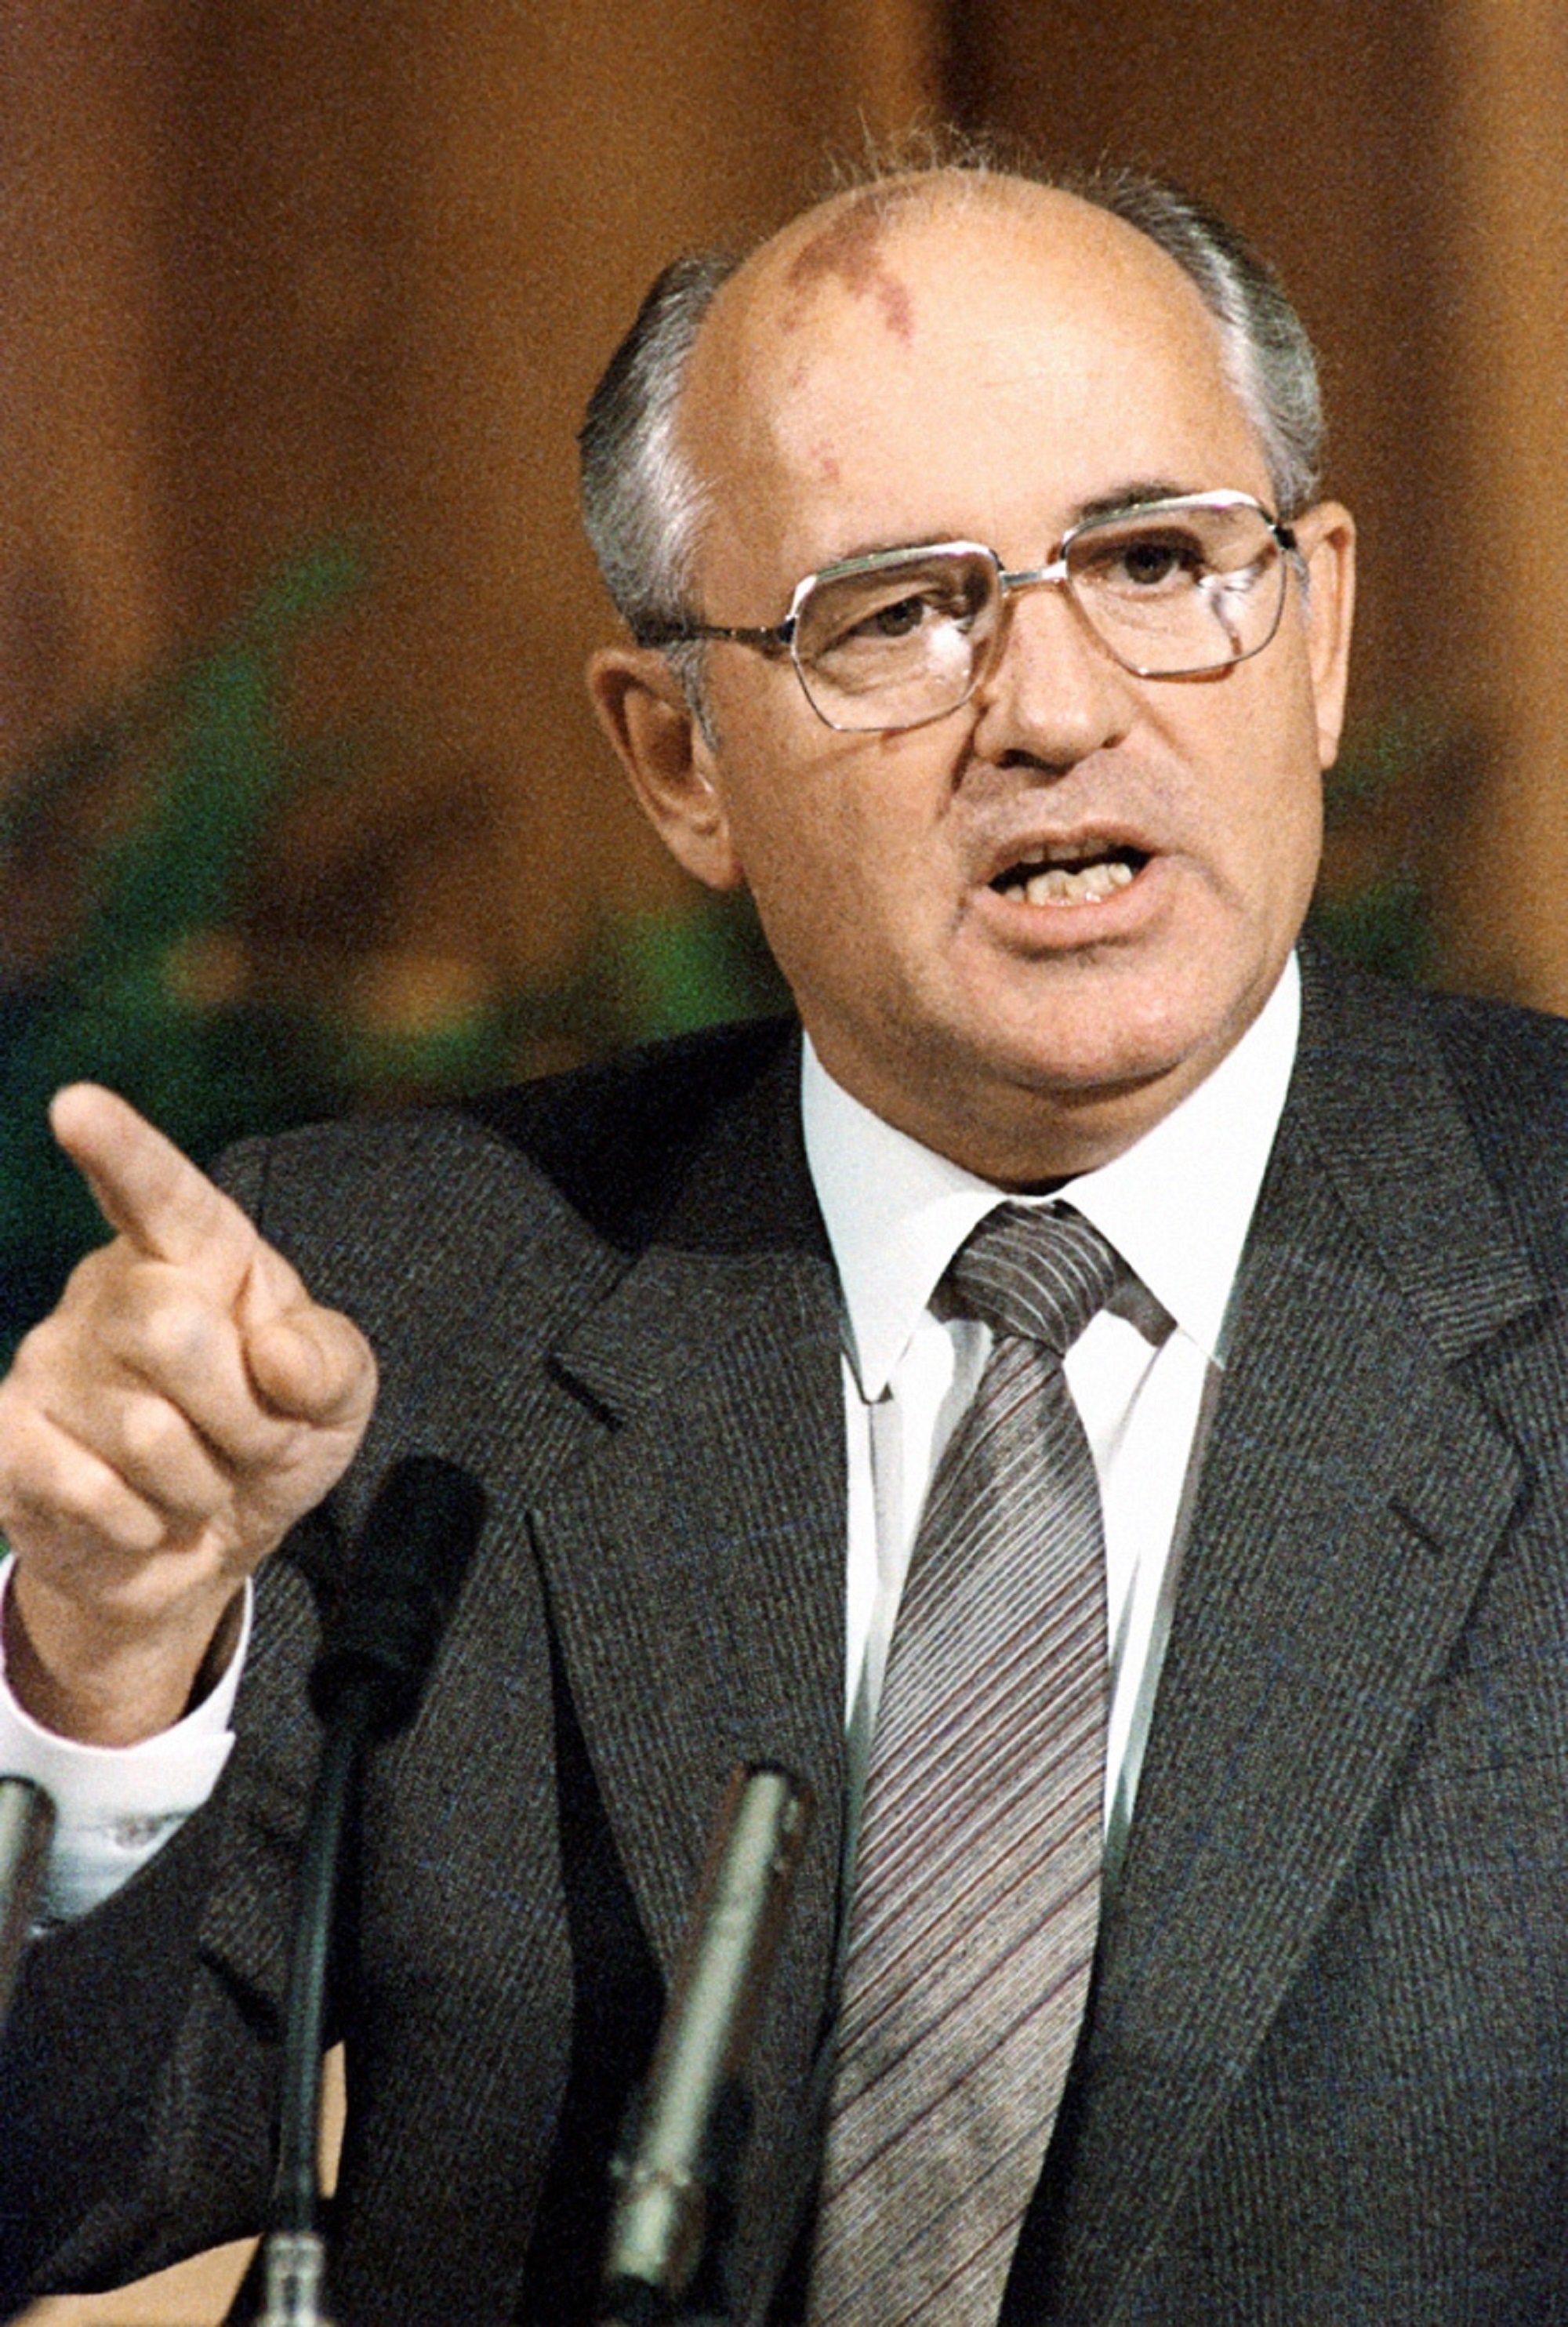 Muere Mijaíl Gorbachov, el último presidente soviético